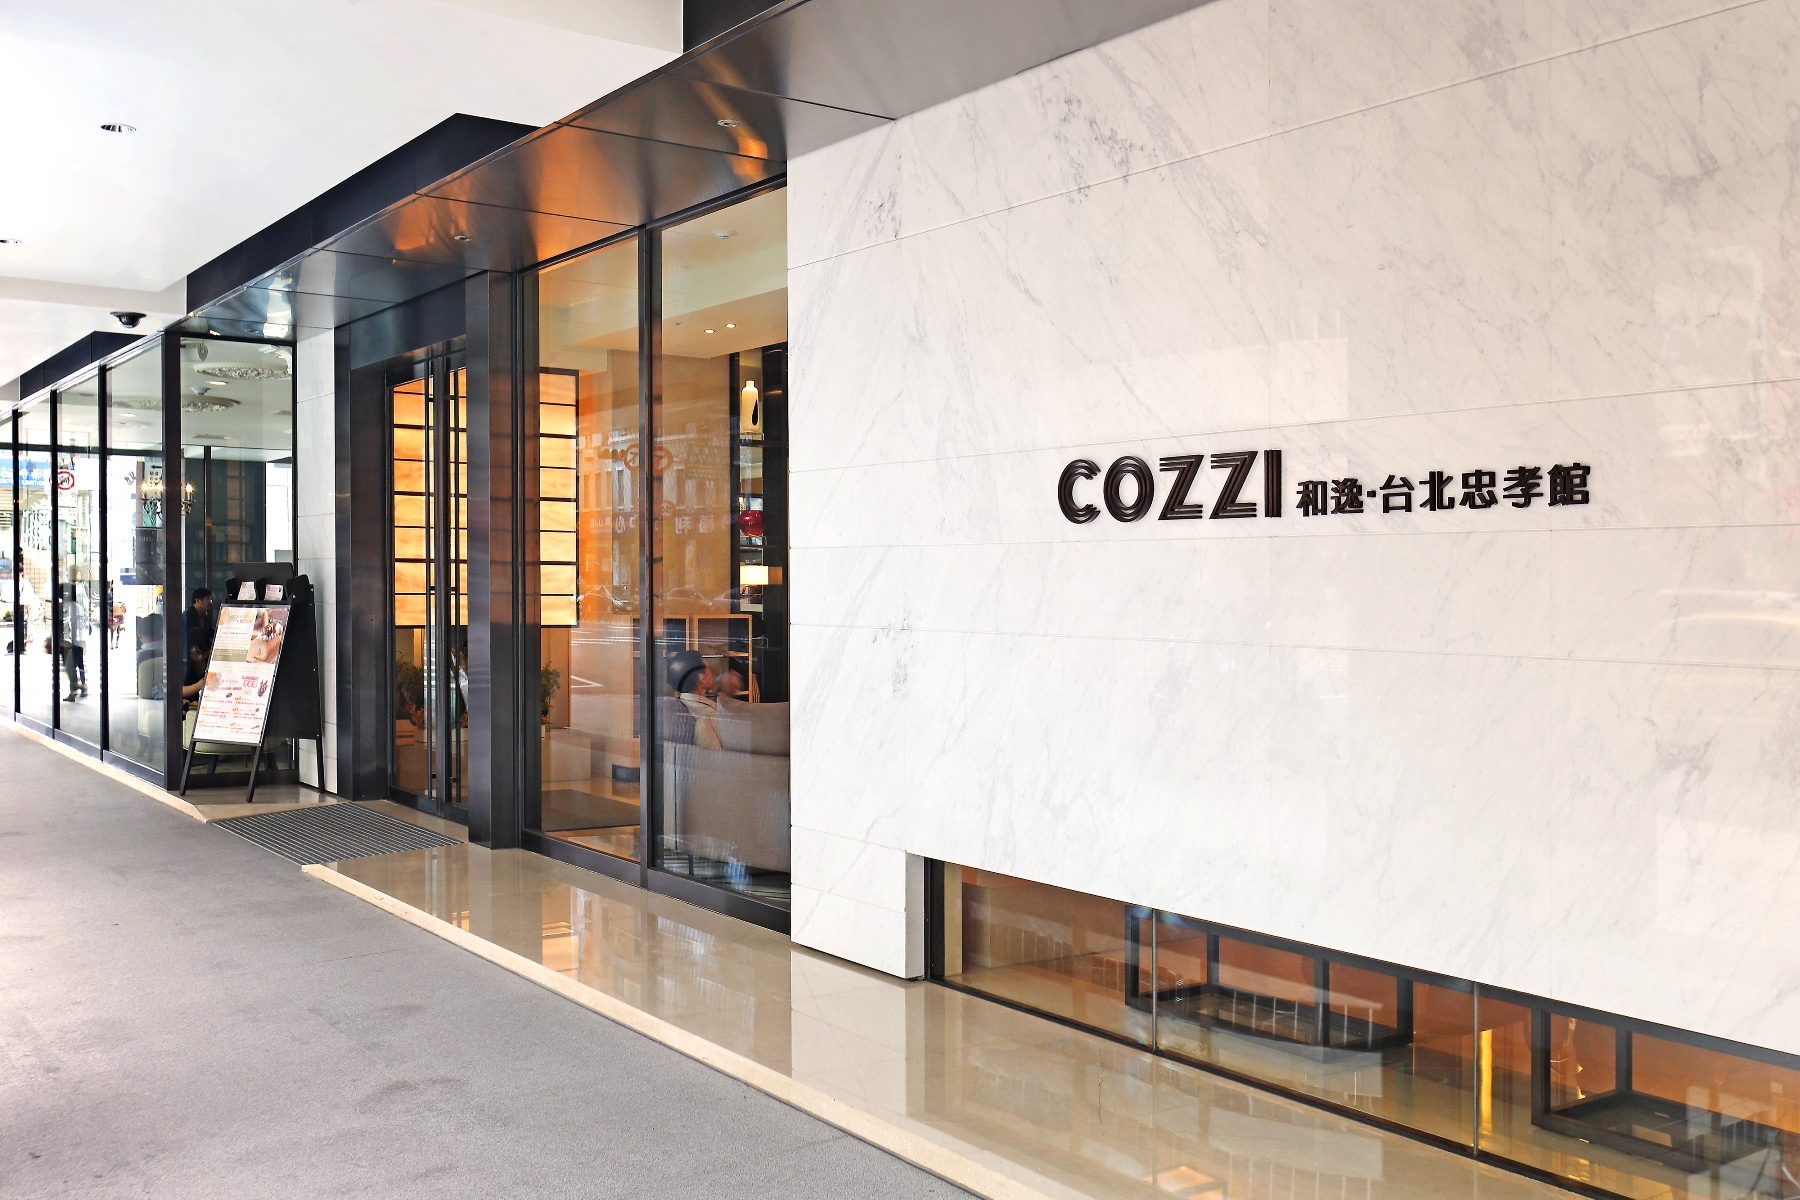 HOTEL COZZI Zhongxiao Taipei
和逸飯店‧台北忠孝館